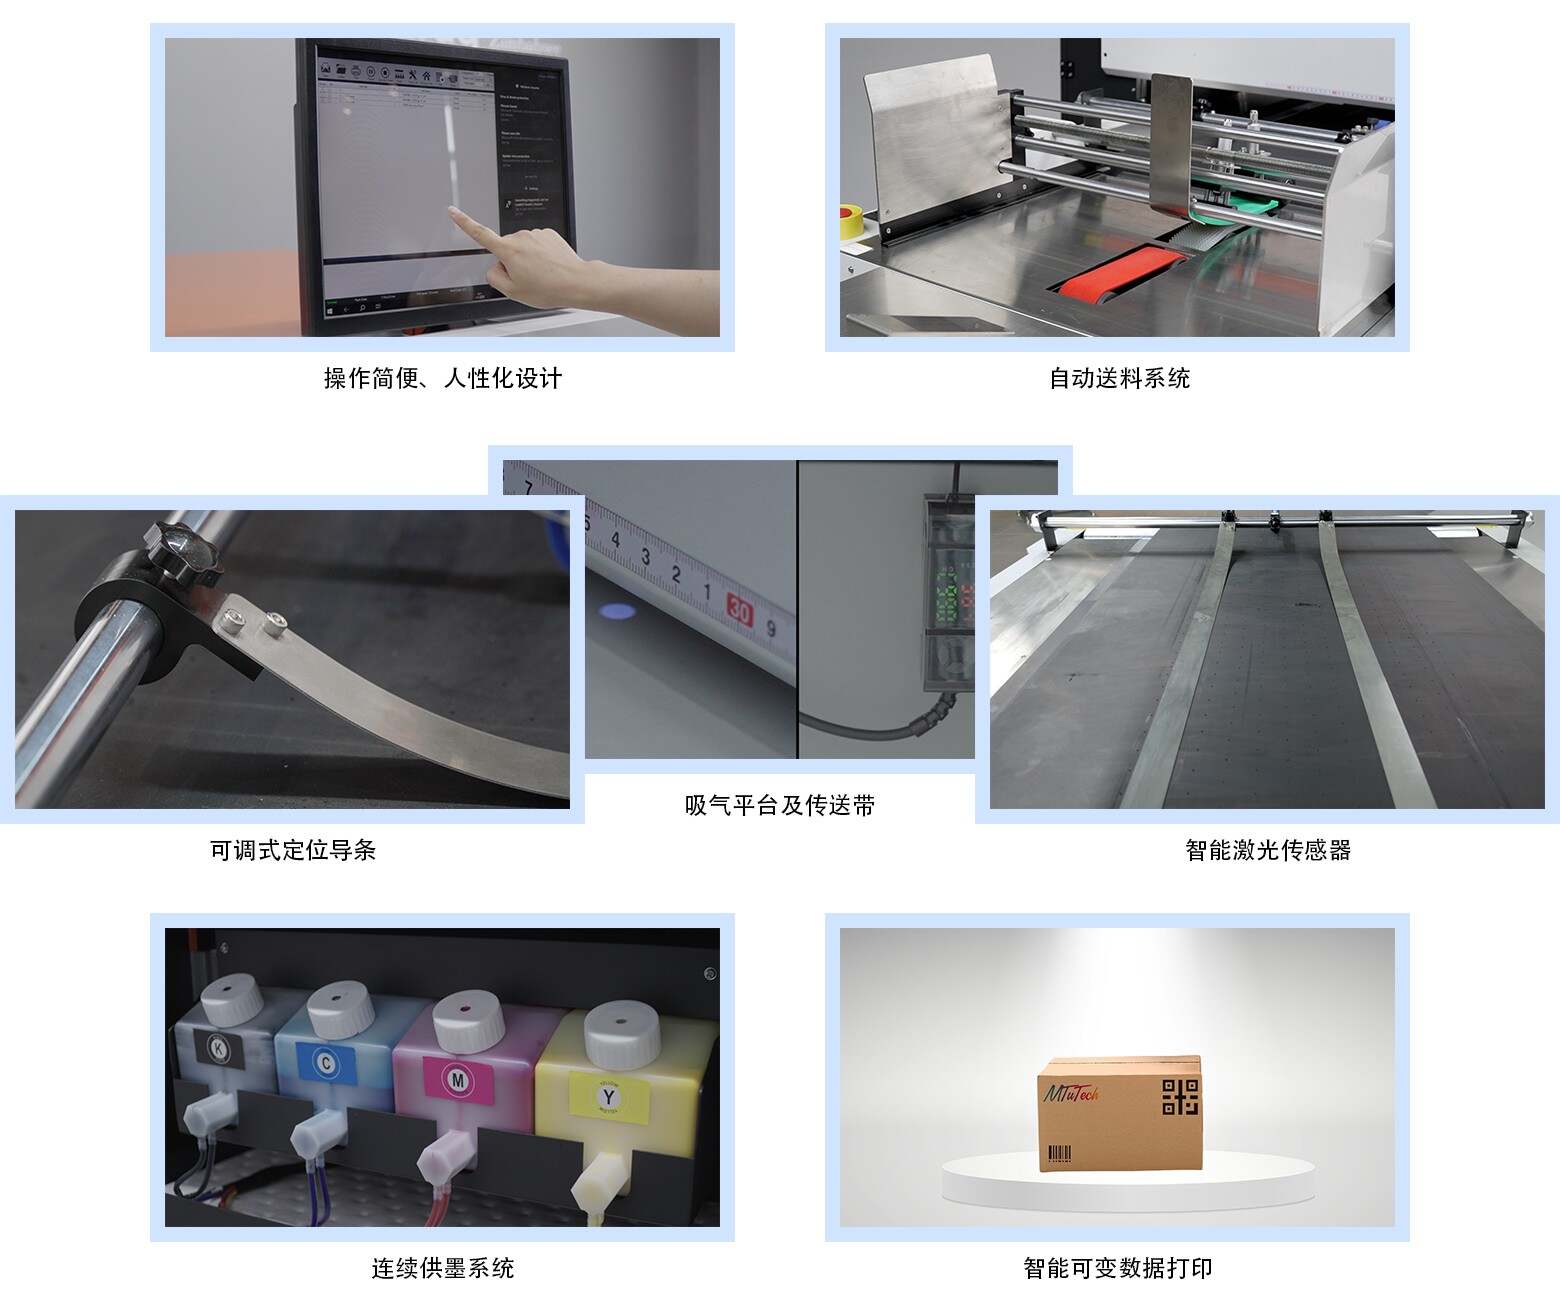 MTuTech single pass printer details_Chinese